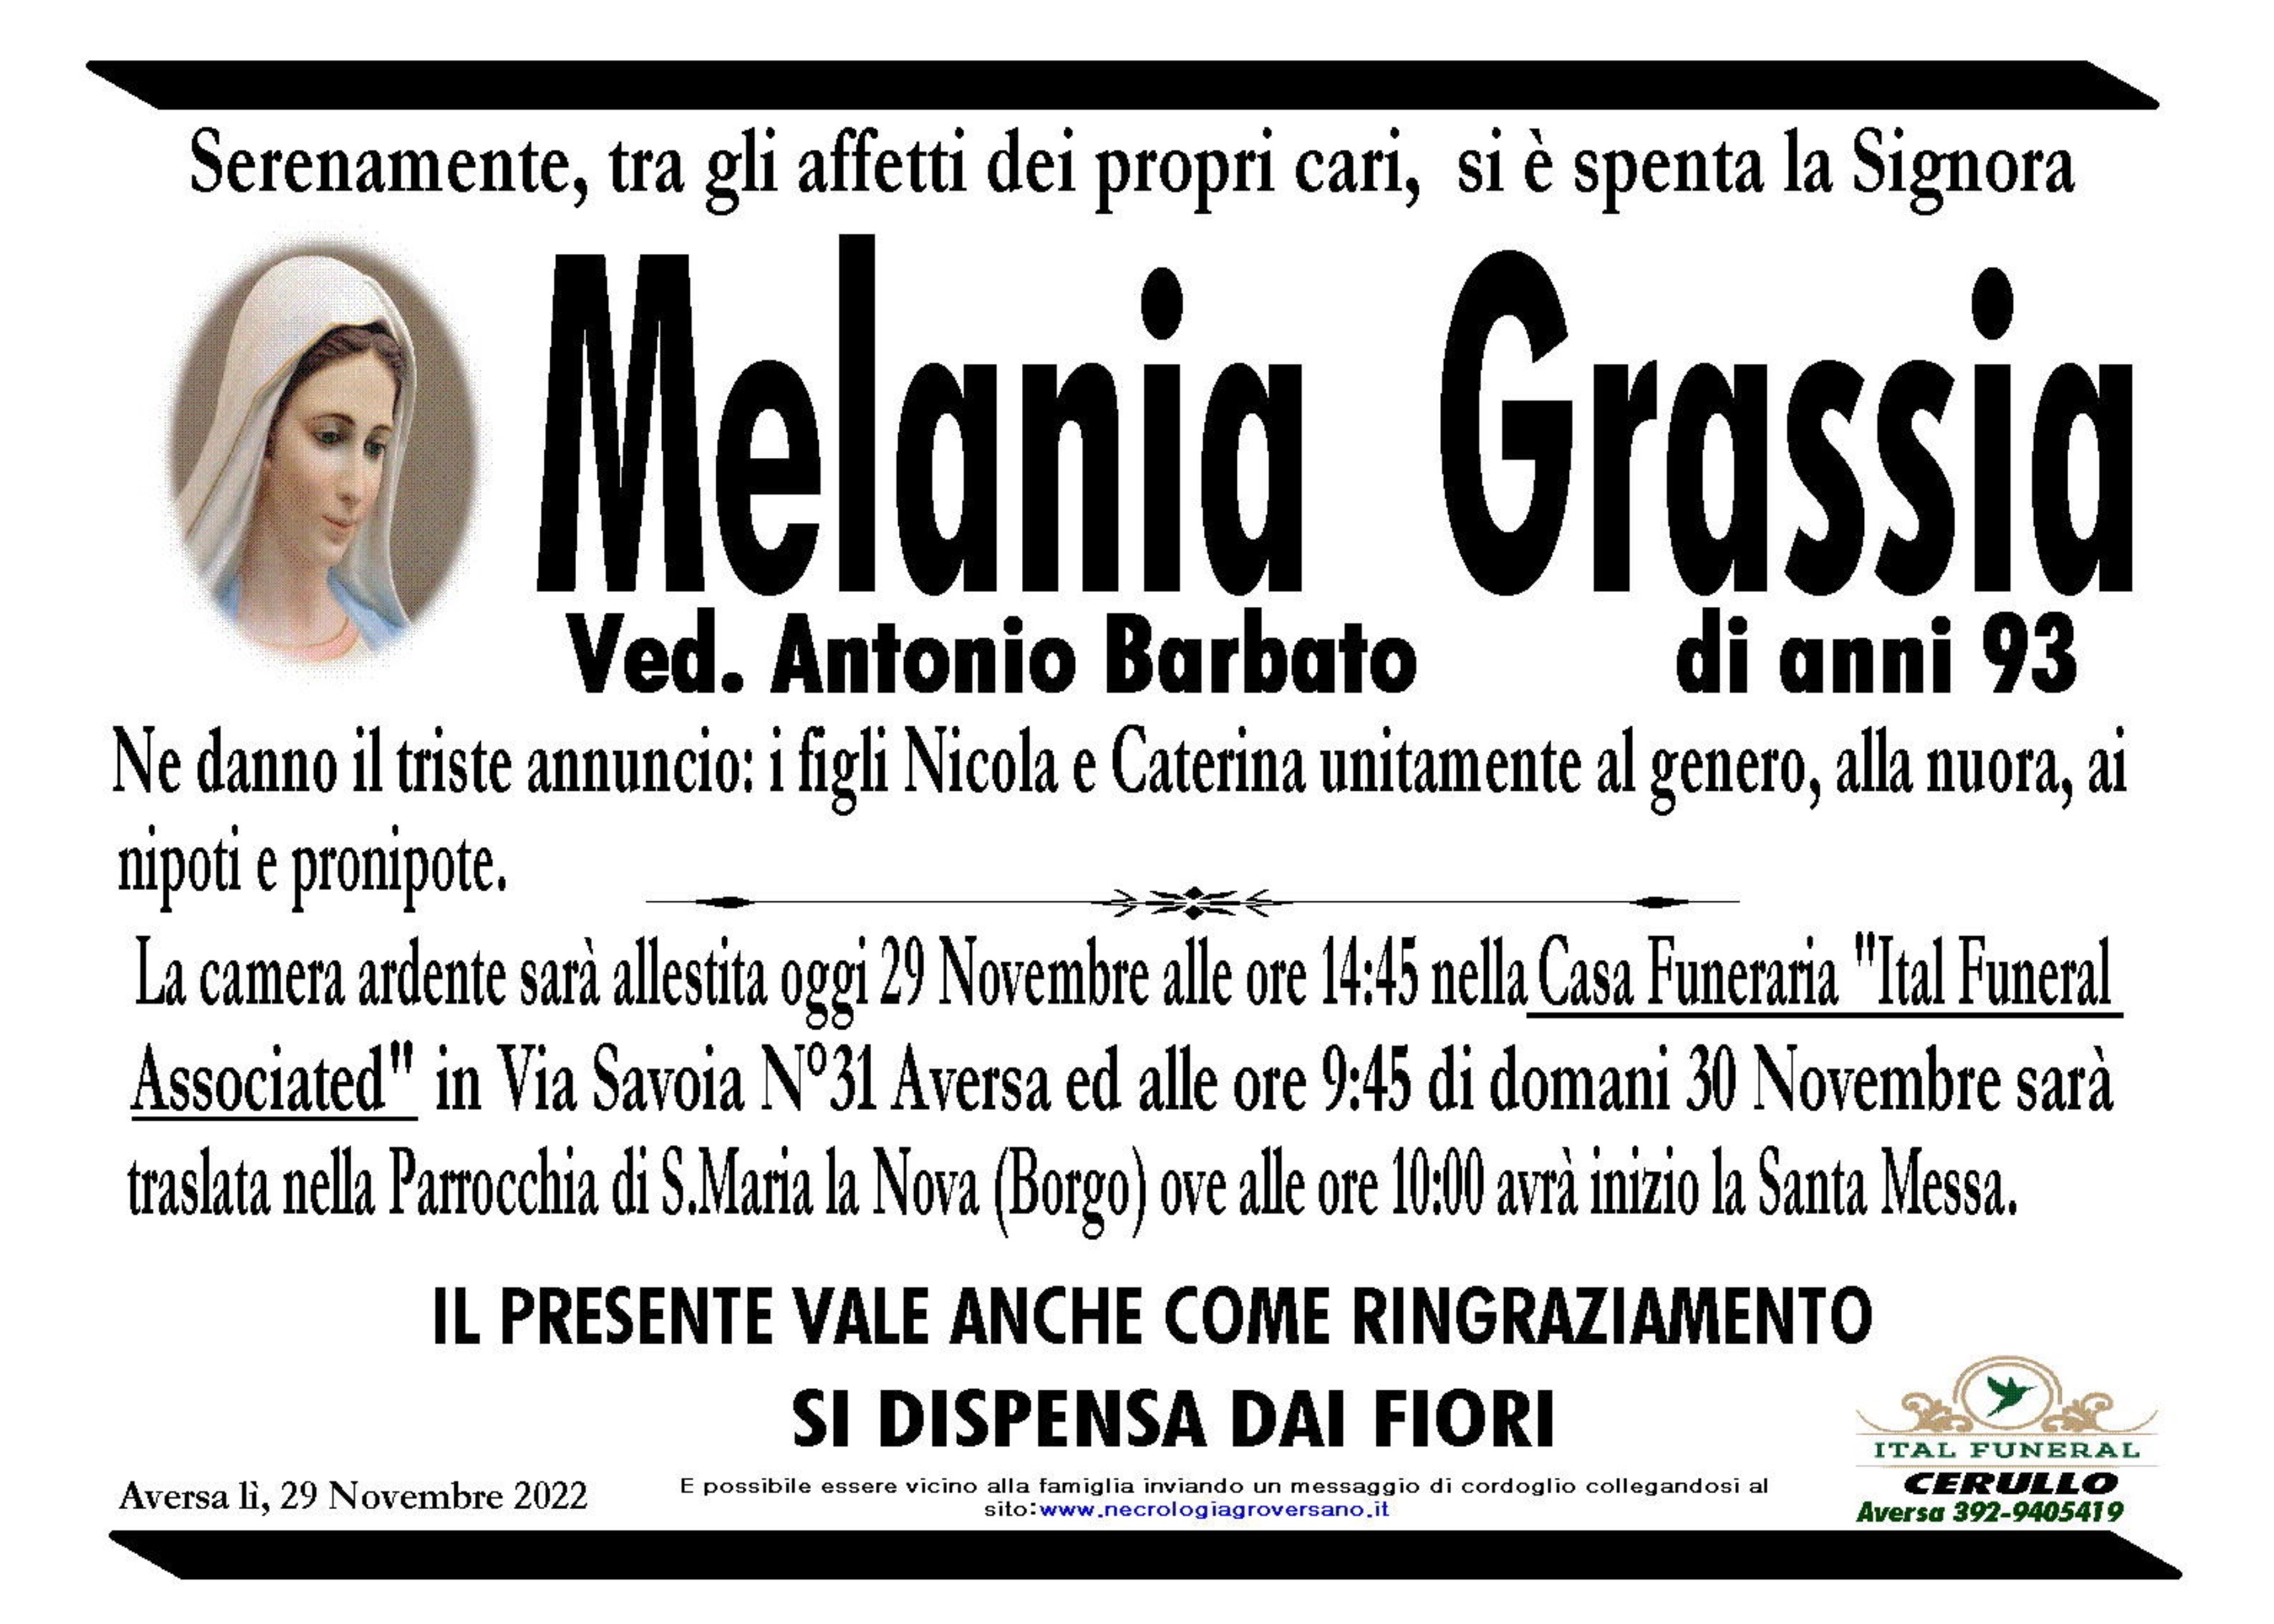 Melania Grassia